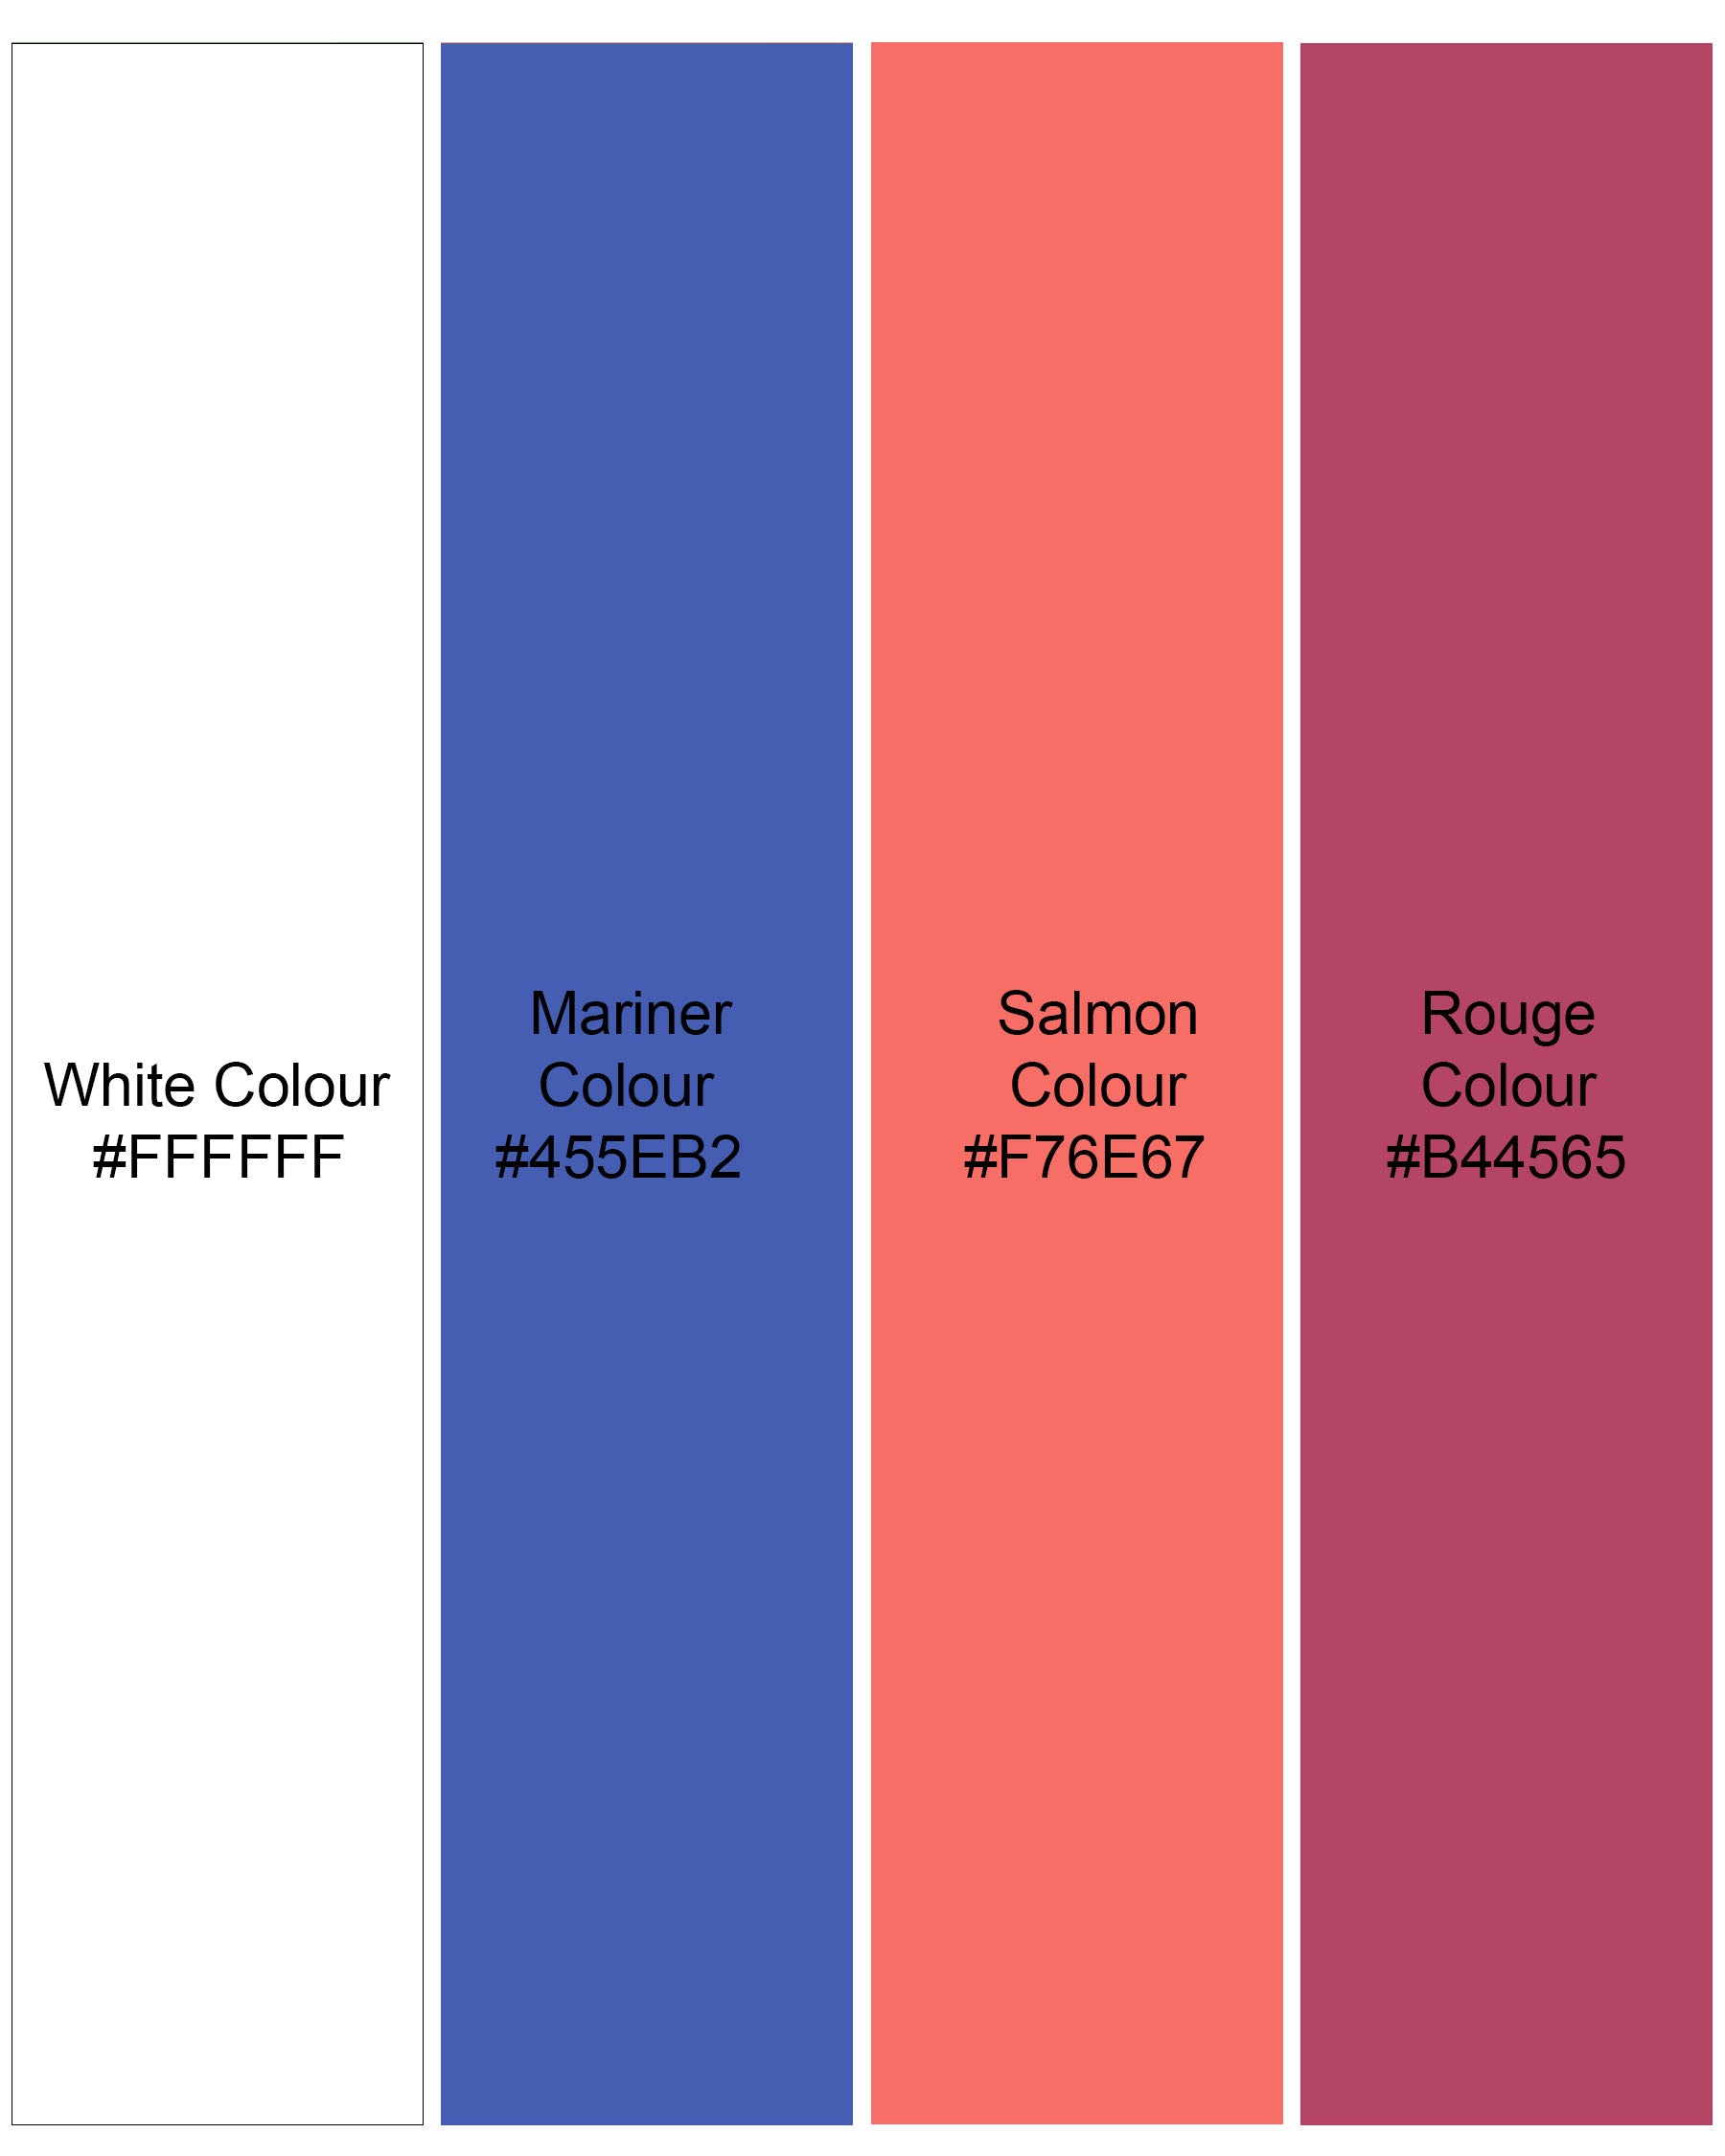 Salmon Orange And White Plaid Premium Cotton Shirt 7793-38, 7793-H-38, 7793-39,7793-H-39, 7793-40, 7793-H-40, 7793-42, 7793-H-42, 7793-44, 7793-H-44, 7793-46, 7793-H-46, 7793-48, 7793-H-48, 7793-50, 7793-H-50, 7793-52, 7793-H-52